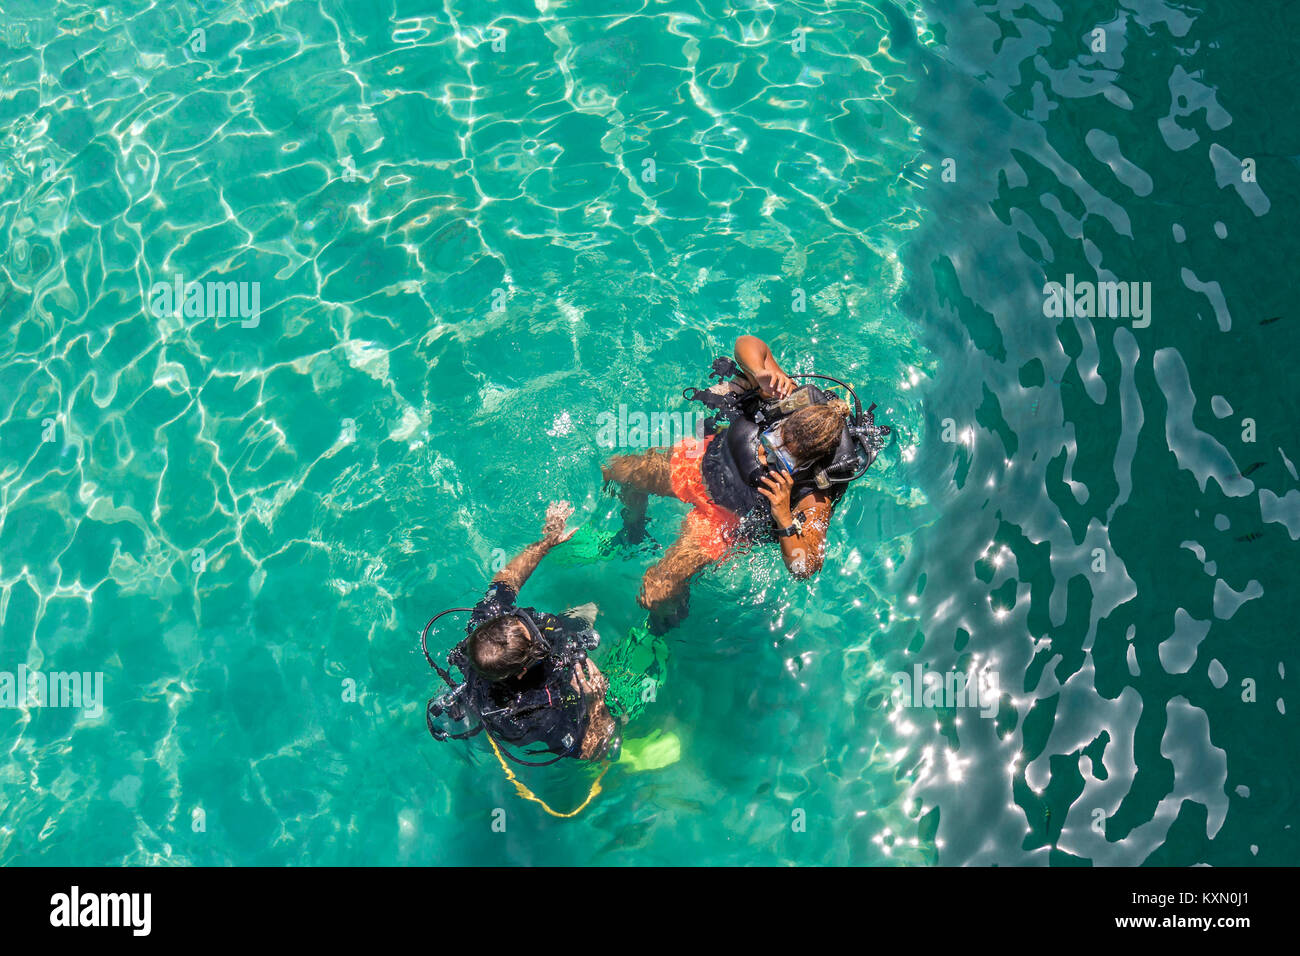 Un grupo de alumnos de buceo tienen una lección en las poco profundas aguas cristalinas de una isla tropical. Foto de stock